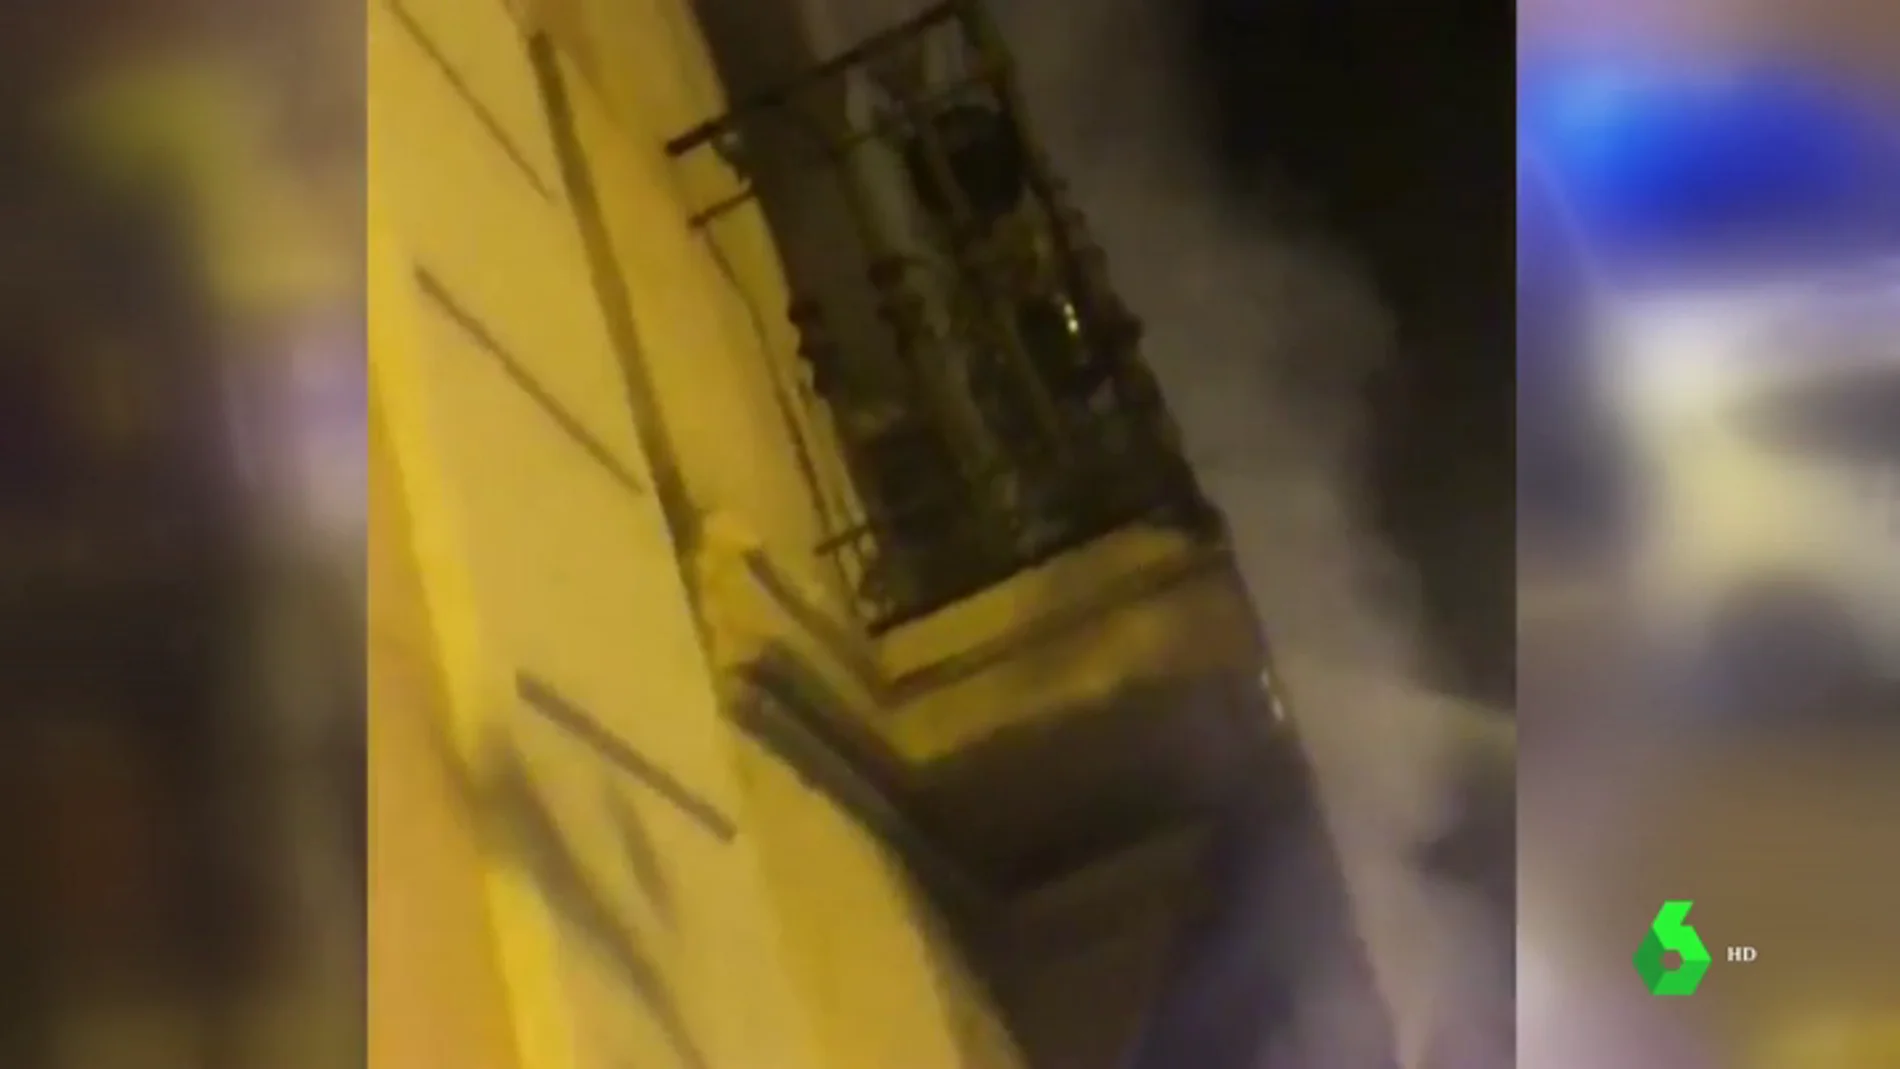  Un detenido por el incendio en un edificio de viviendas en el centro de Barcelona que ha dejado 18 heridos